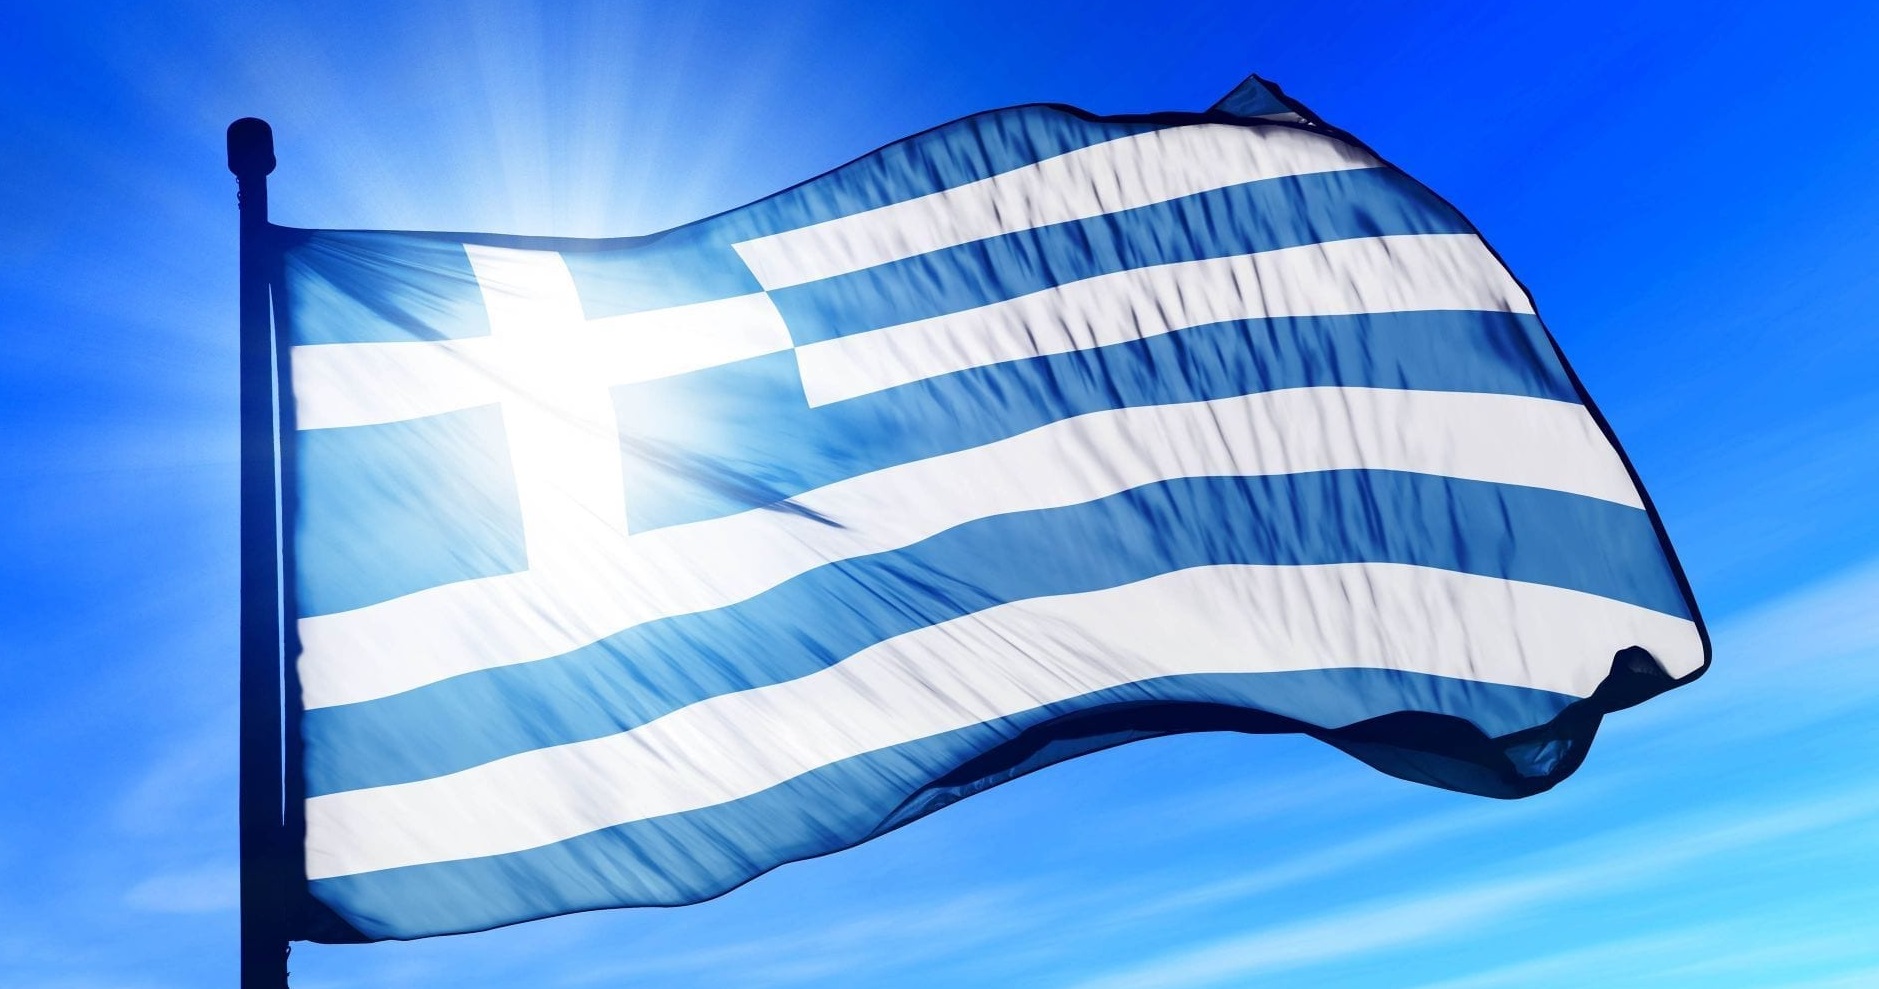 Yunanistan, Rusya'daki gelişmeler için kriz yönetim birimi kurdu